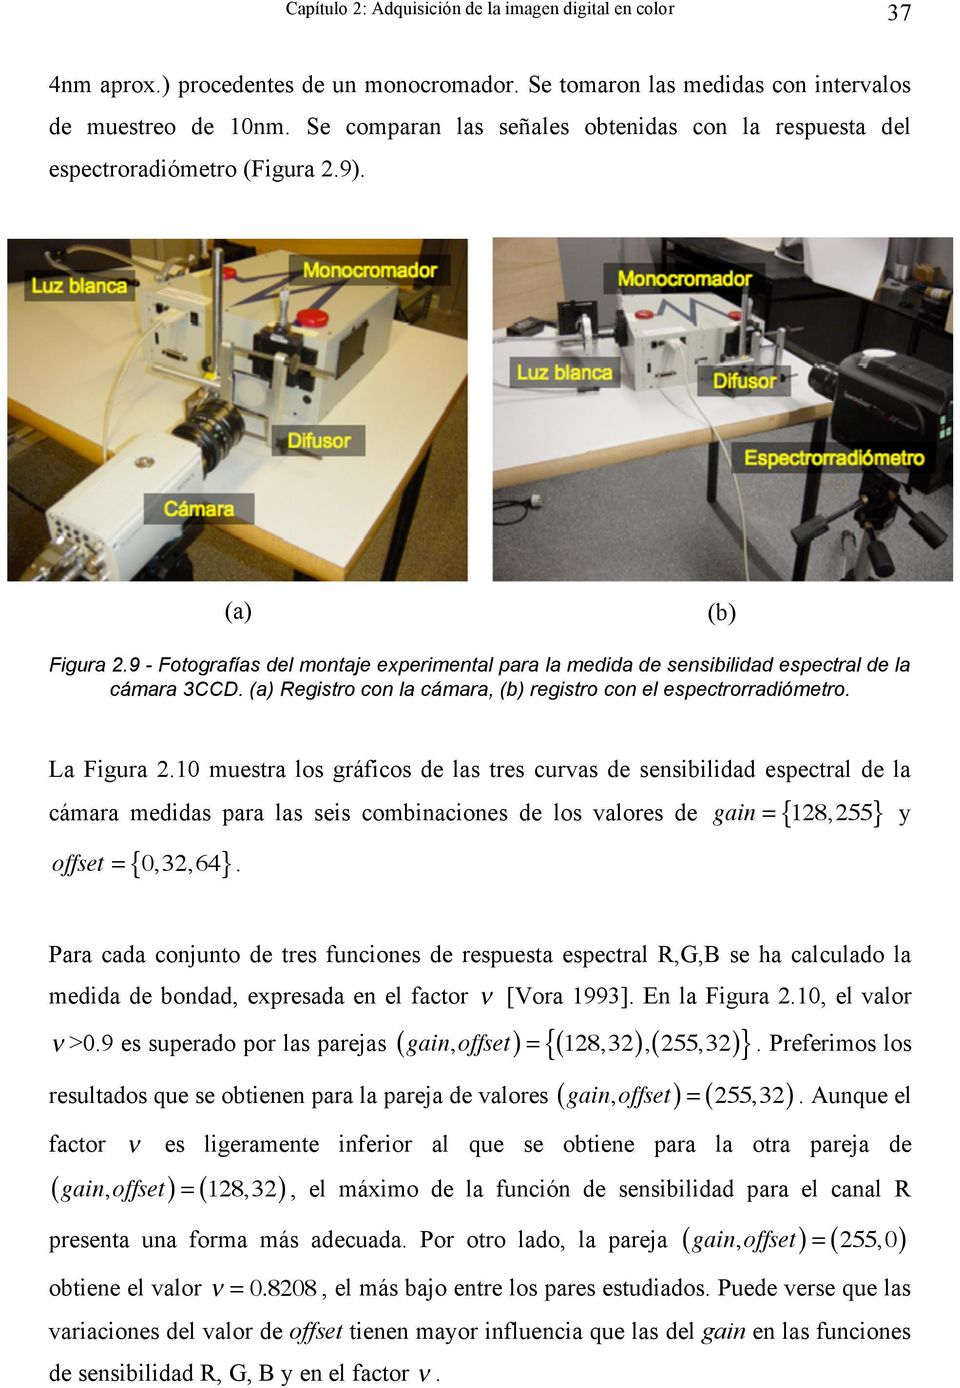 9 - Fotografías del montaje experimental para la medida de sensibilidad espectral de la cámara 3CCD. (a) Registro con la cámara, (b) registro con el espectrorradiómetro. La Figura 2.